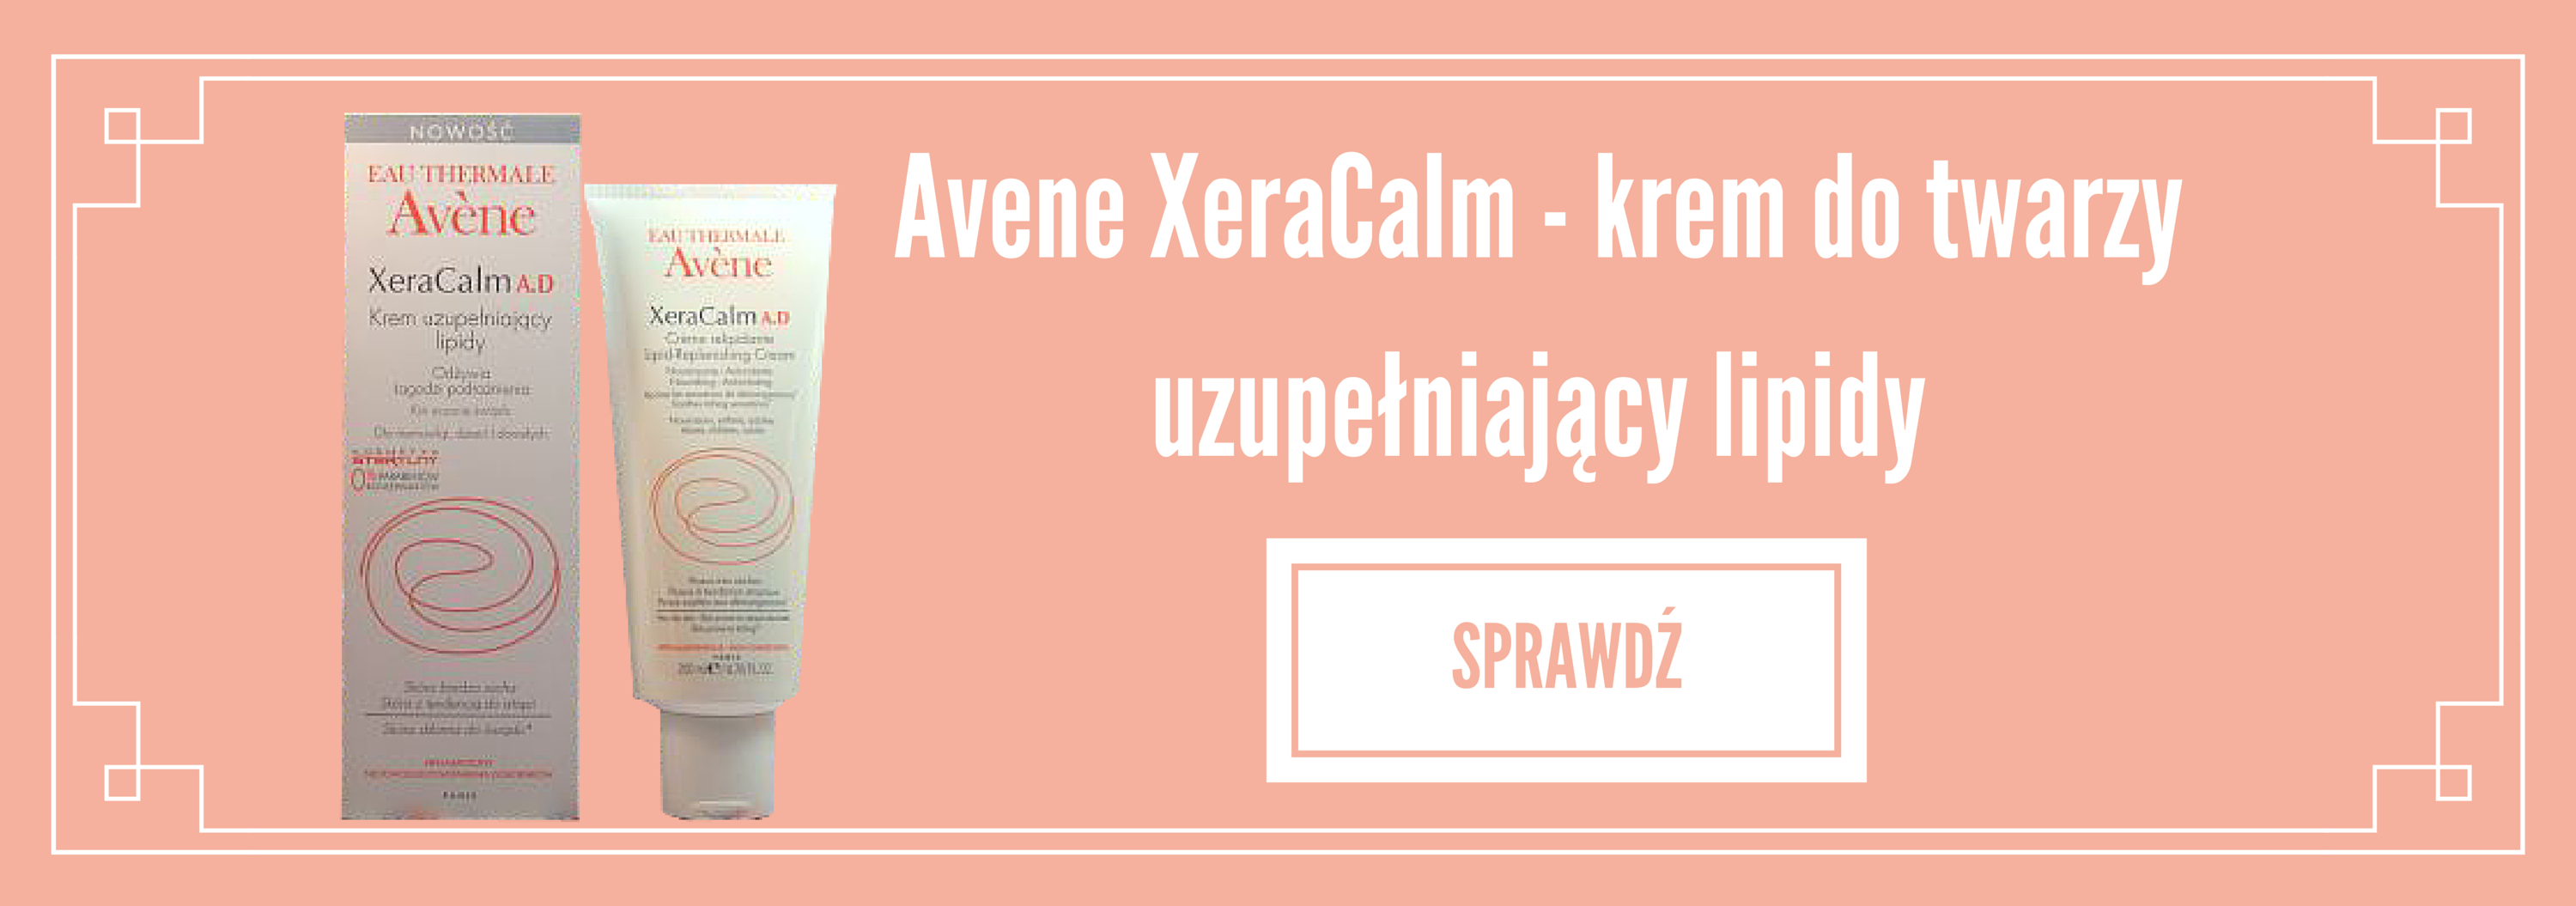 AVENE XeraCalm - krem do twarzy uzupełniający lipidy